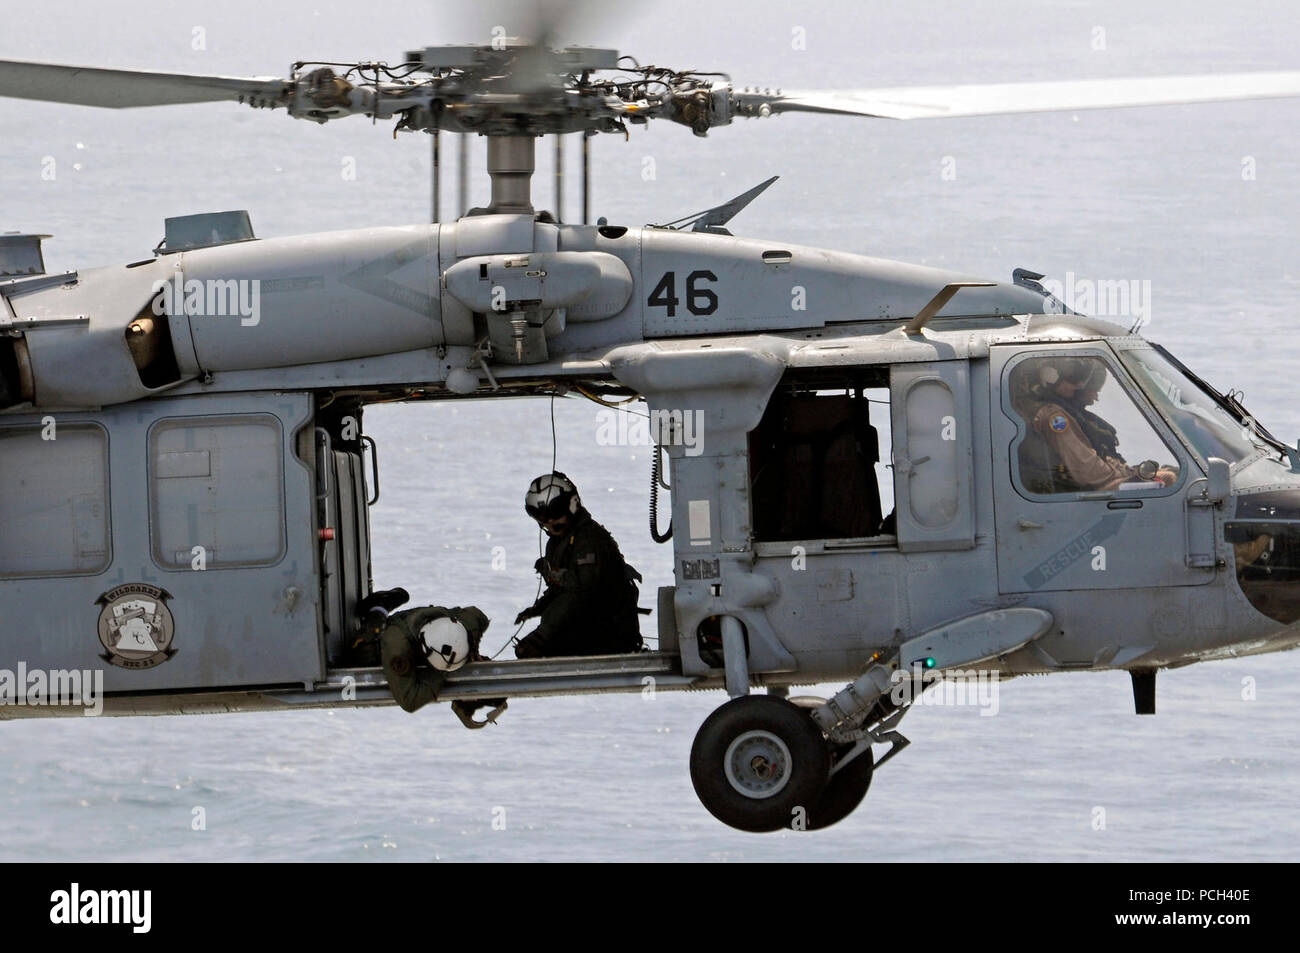 Ein U.S. Navy aircrewman prüft die Cargo Anhänger eines MH-60S Seahawk Helikopter Hubschrauber Meer Combat Squadron (HSC) 23 während einer vertikalen Auffüllung zugewiesen-auf-See zwischen dem schnellen Combat support ship USNS Brücke (T-AOE 10) und amphibische Landung dock Schiff USS Comstock (LSD 45) im Arabischen Golf, 17. Mai 2011. Comstock unterstützt Maritime Security Operations und Theater Sicherheit Zusammenarbeit in den USA 5 Flotte Verantwortungsbereich. Stockfoto